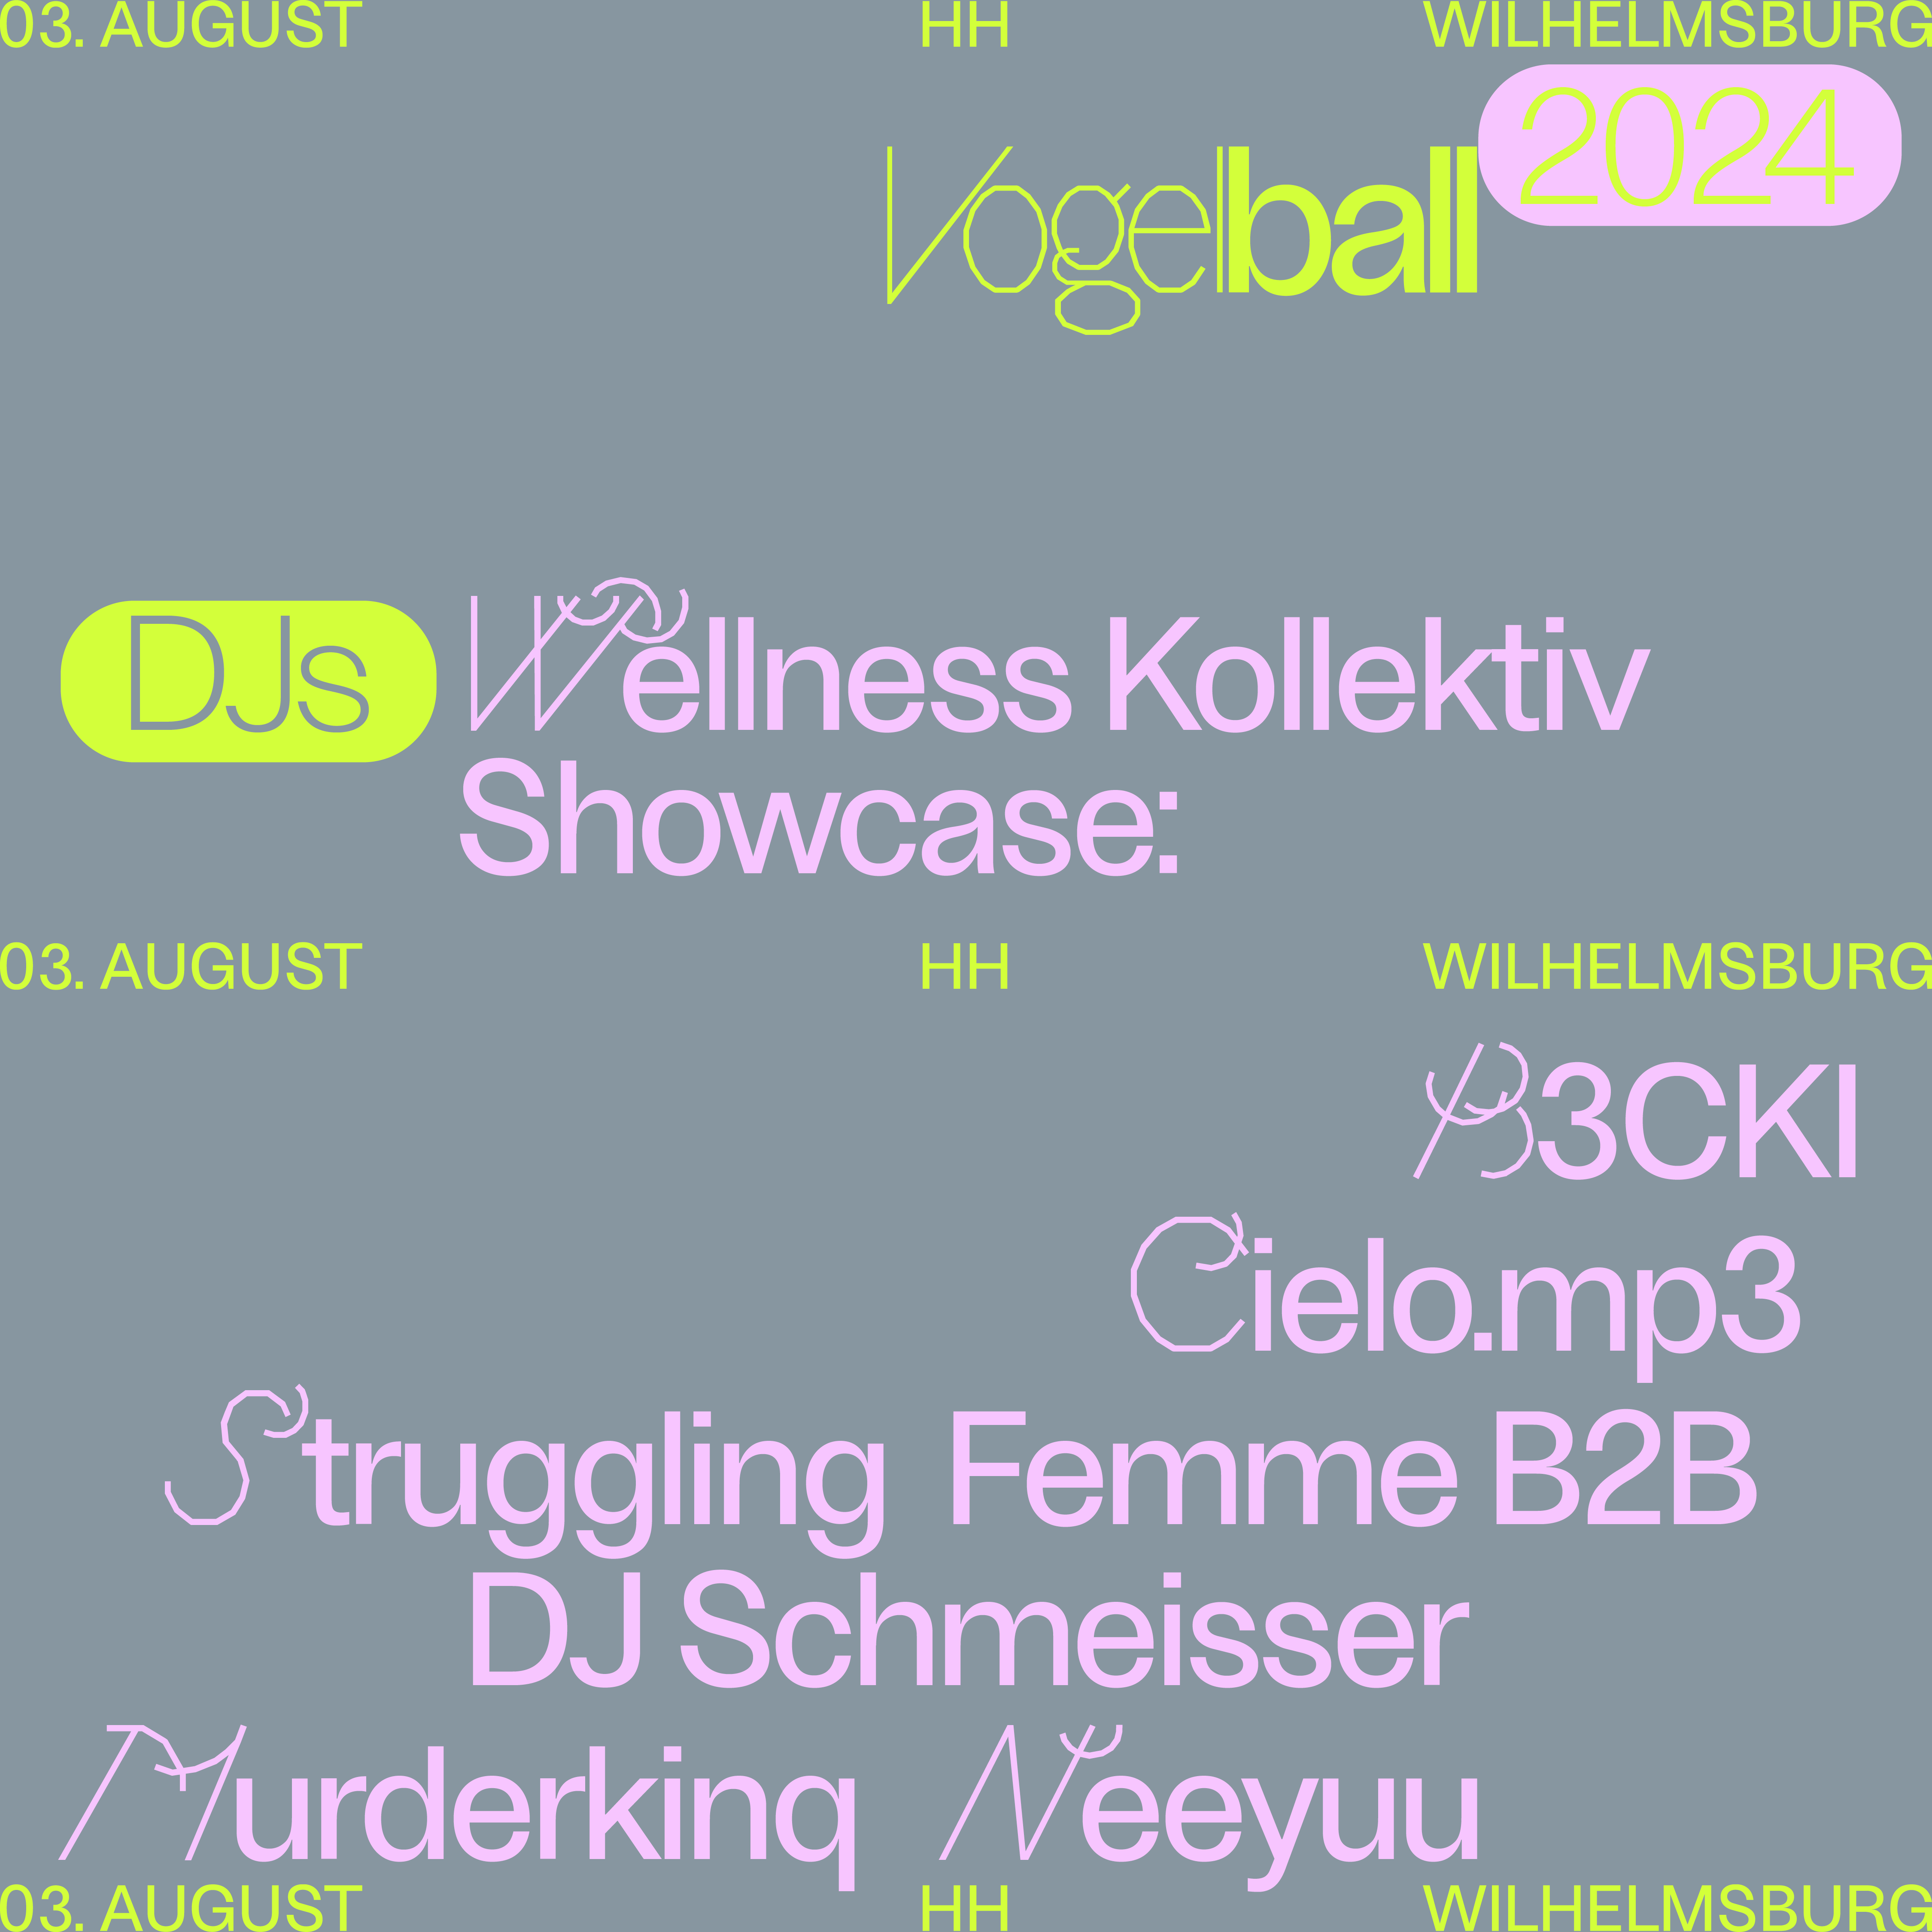 WELLNESS KOLLEKTIV SHOWCASE @ VOGELBALL Festival 2024